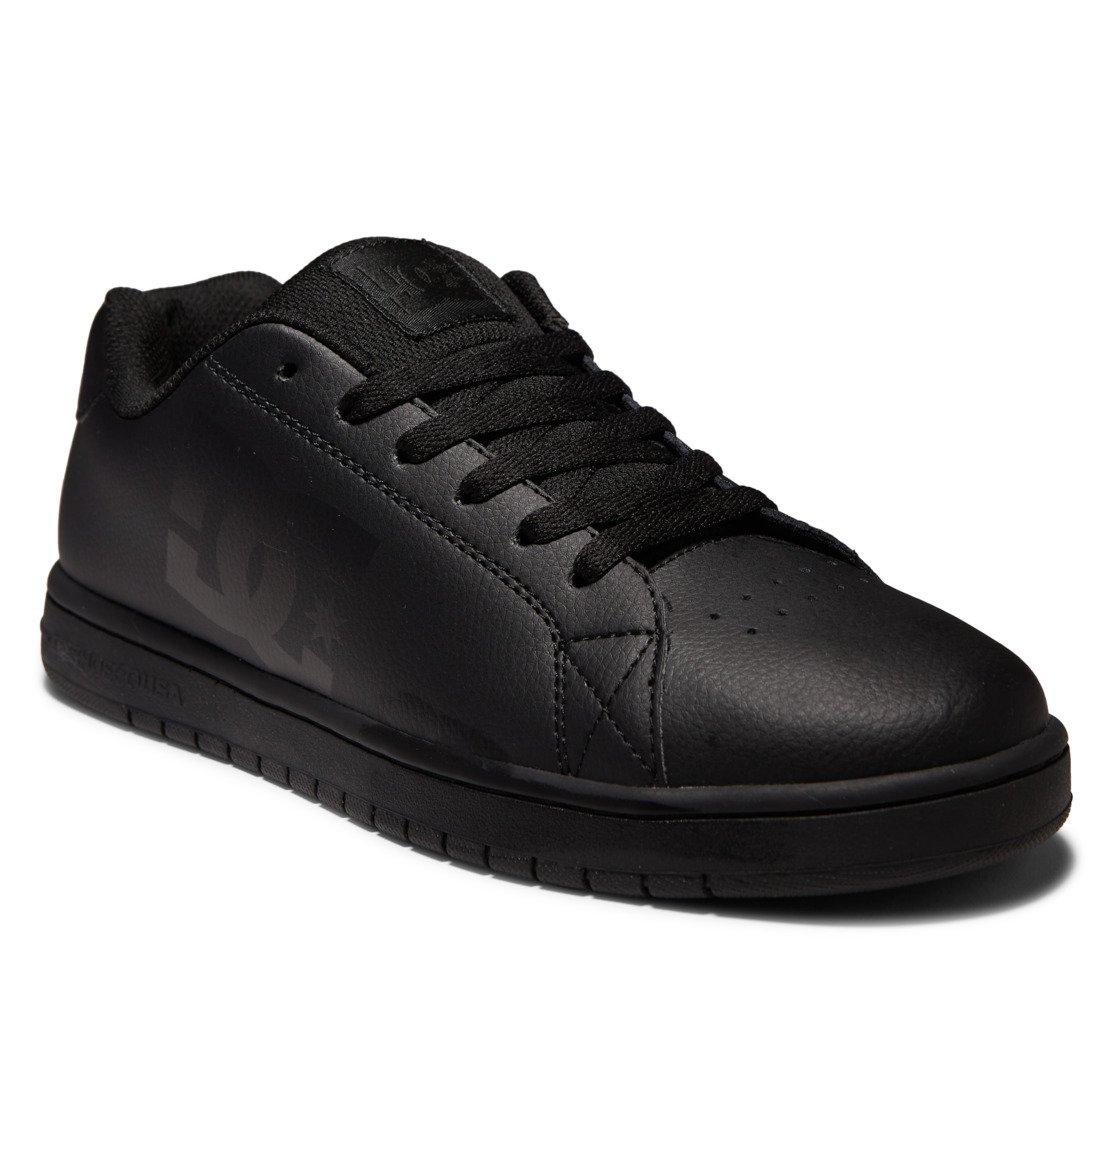 Кросівки DC Men's Gaveler Shoes, чоловічі, розмір 46 євро, чорні шкіряні